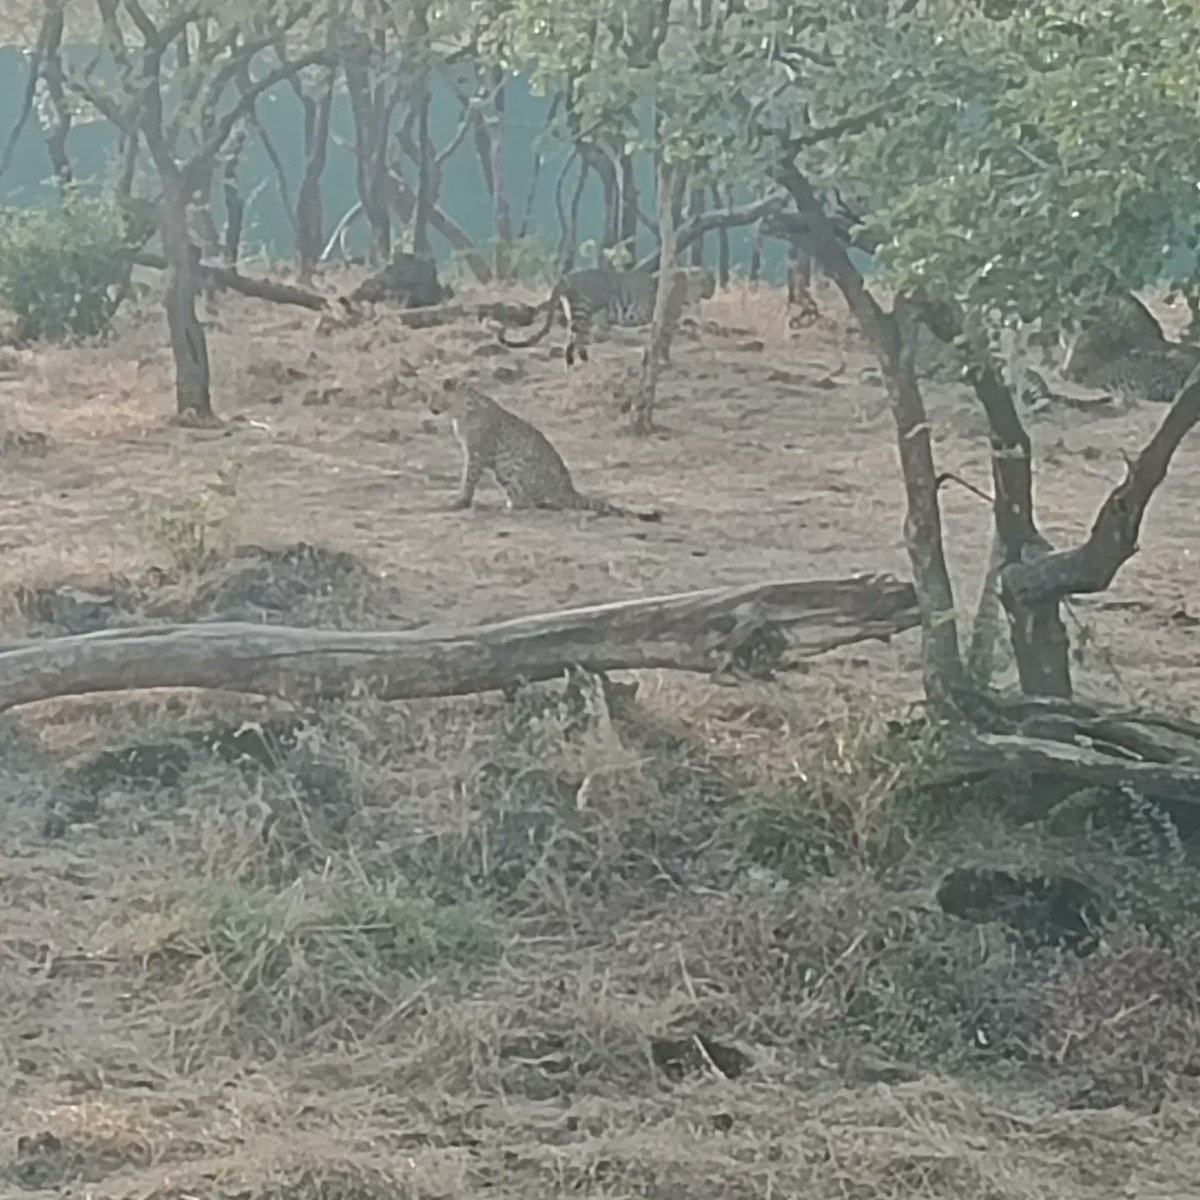 Trip To Sasan Gir.

#SasanGir #Sasan #Gir #Cheetah #Lion #AsiaticLion #Lioness #wildlife #nationalpark #Gujarat